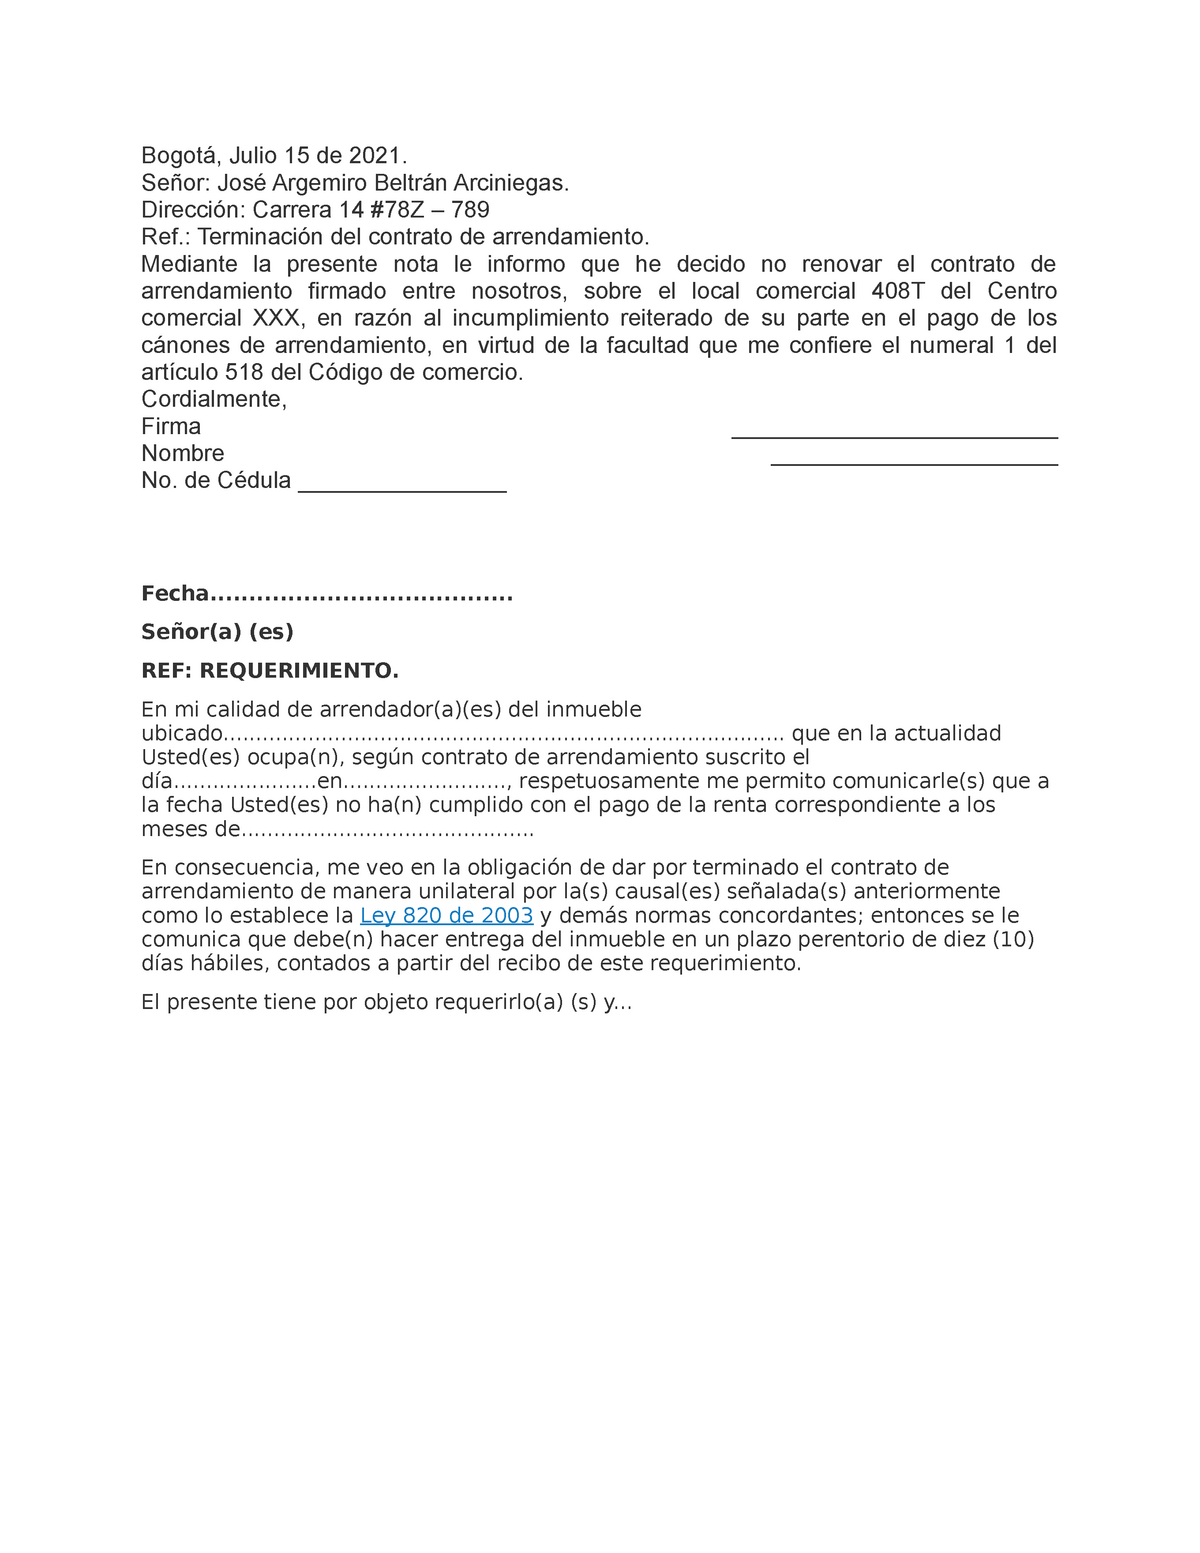 Carta no renovacion contrato de arrendamiento de local comercial - Bogotá,  Julio 15 de 2021. Señor: - Studocu